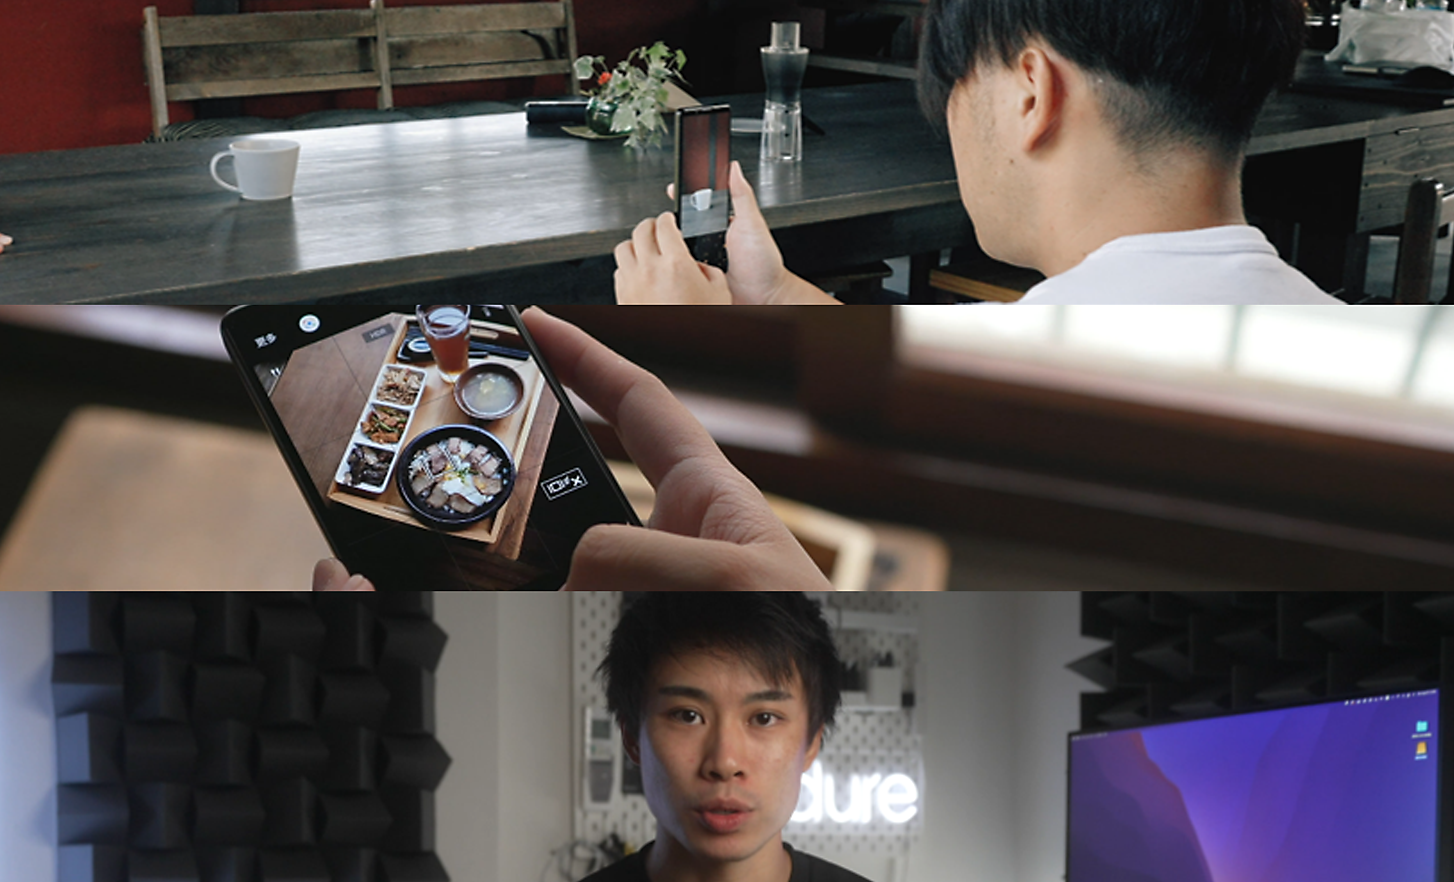 Tri slike: moški fotografira s telefonom Xperia, nekdo gleda sliko na telefonu Xperia in moški gleda neposredno v fotoaparat